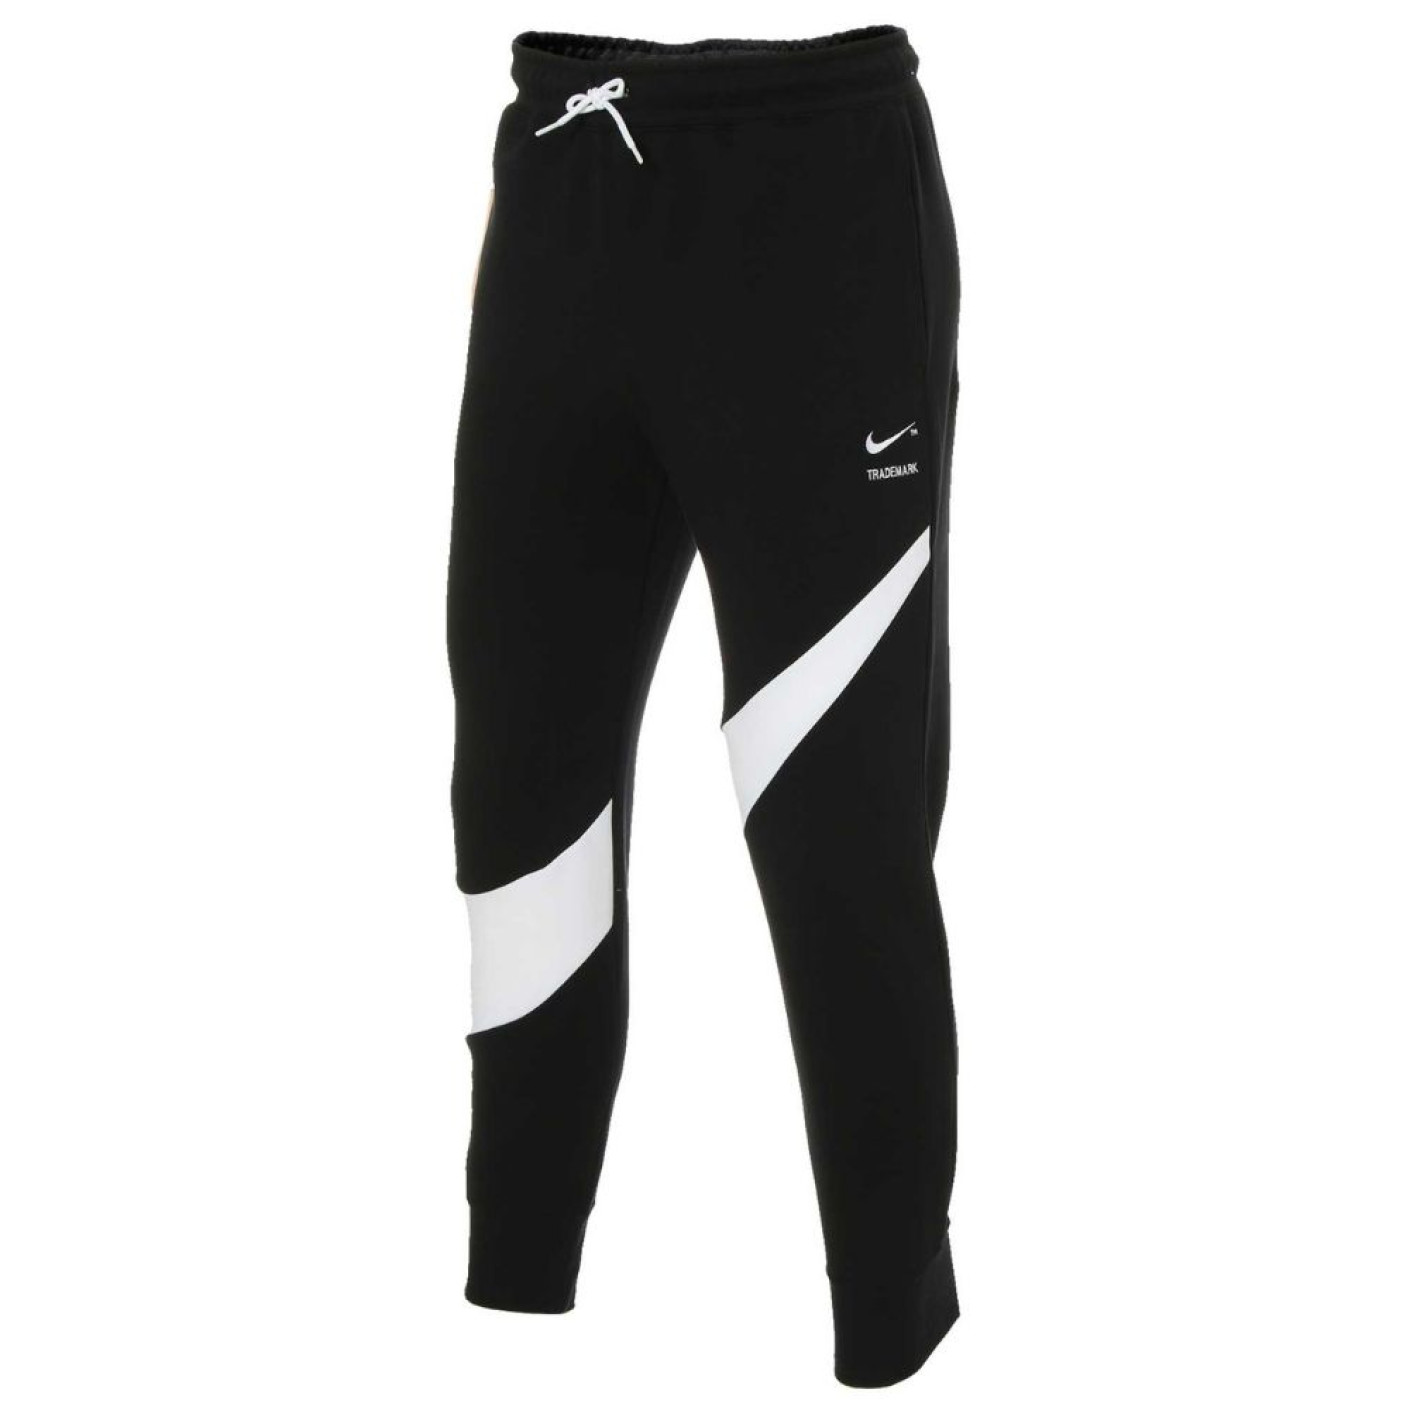 Nike Sportswear Joggingbroek Swoosh Zwart Wit